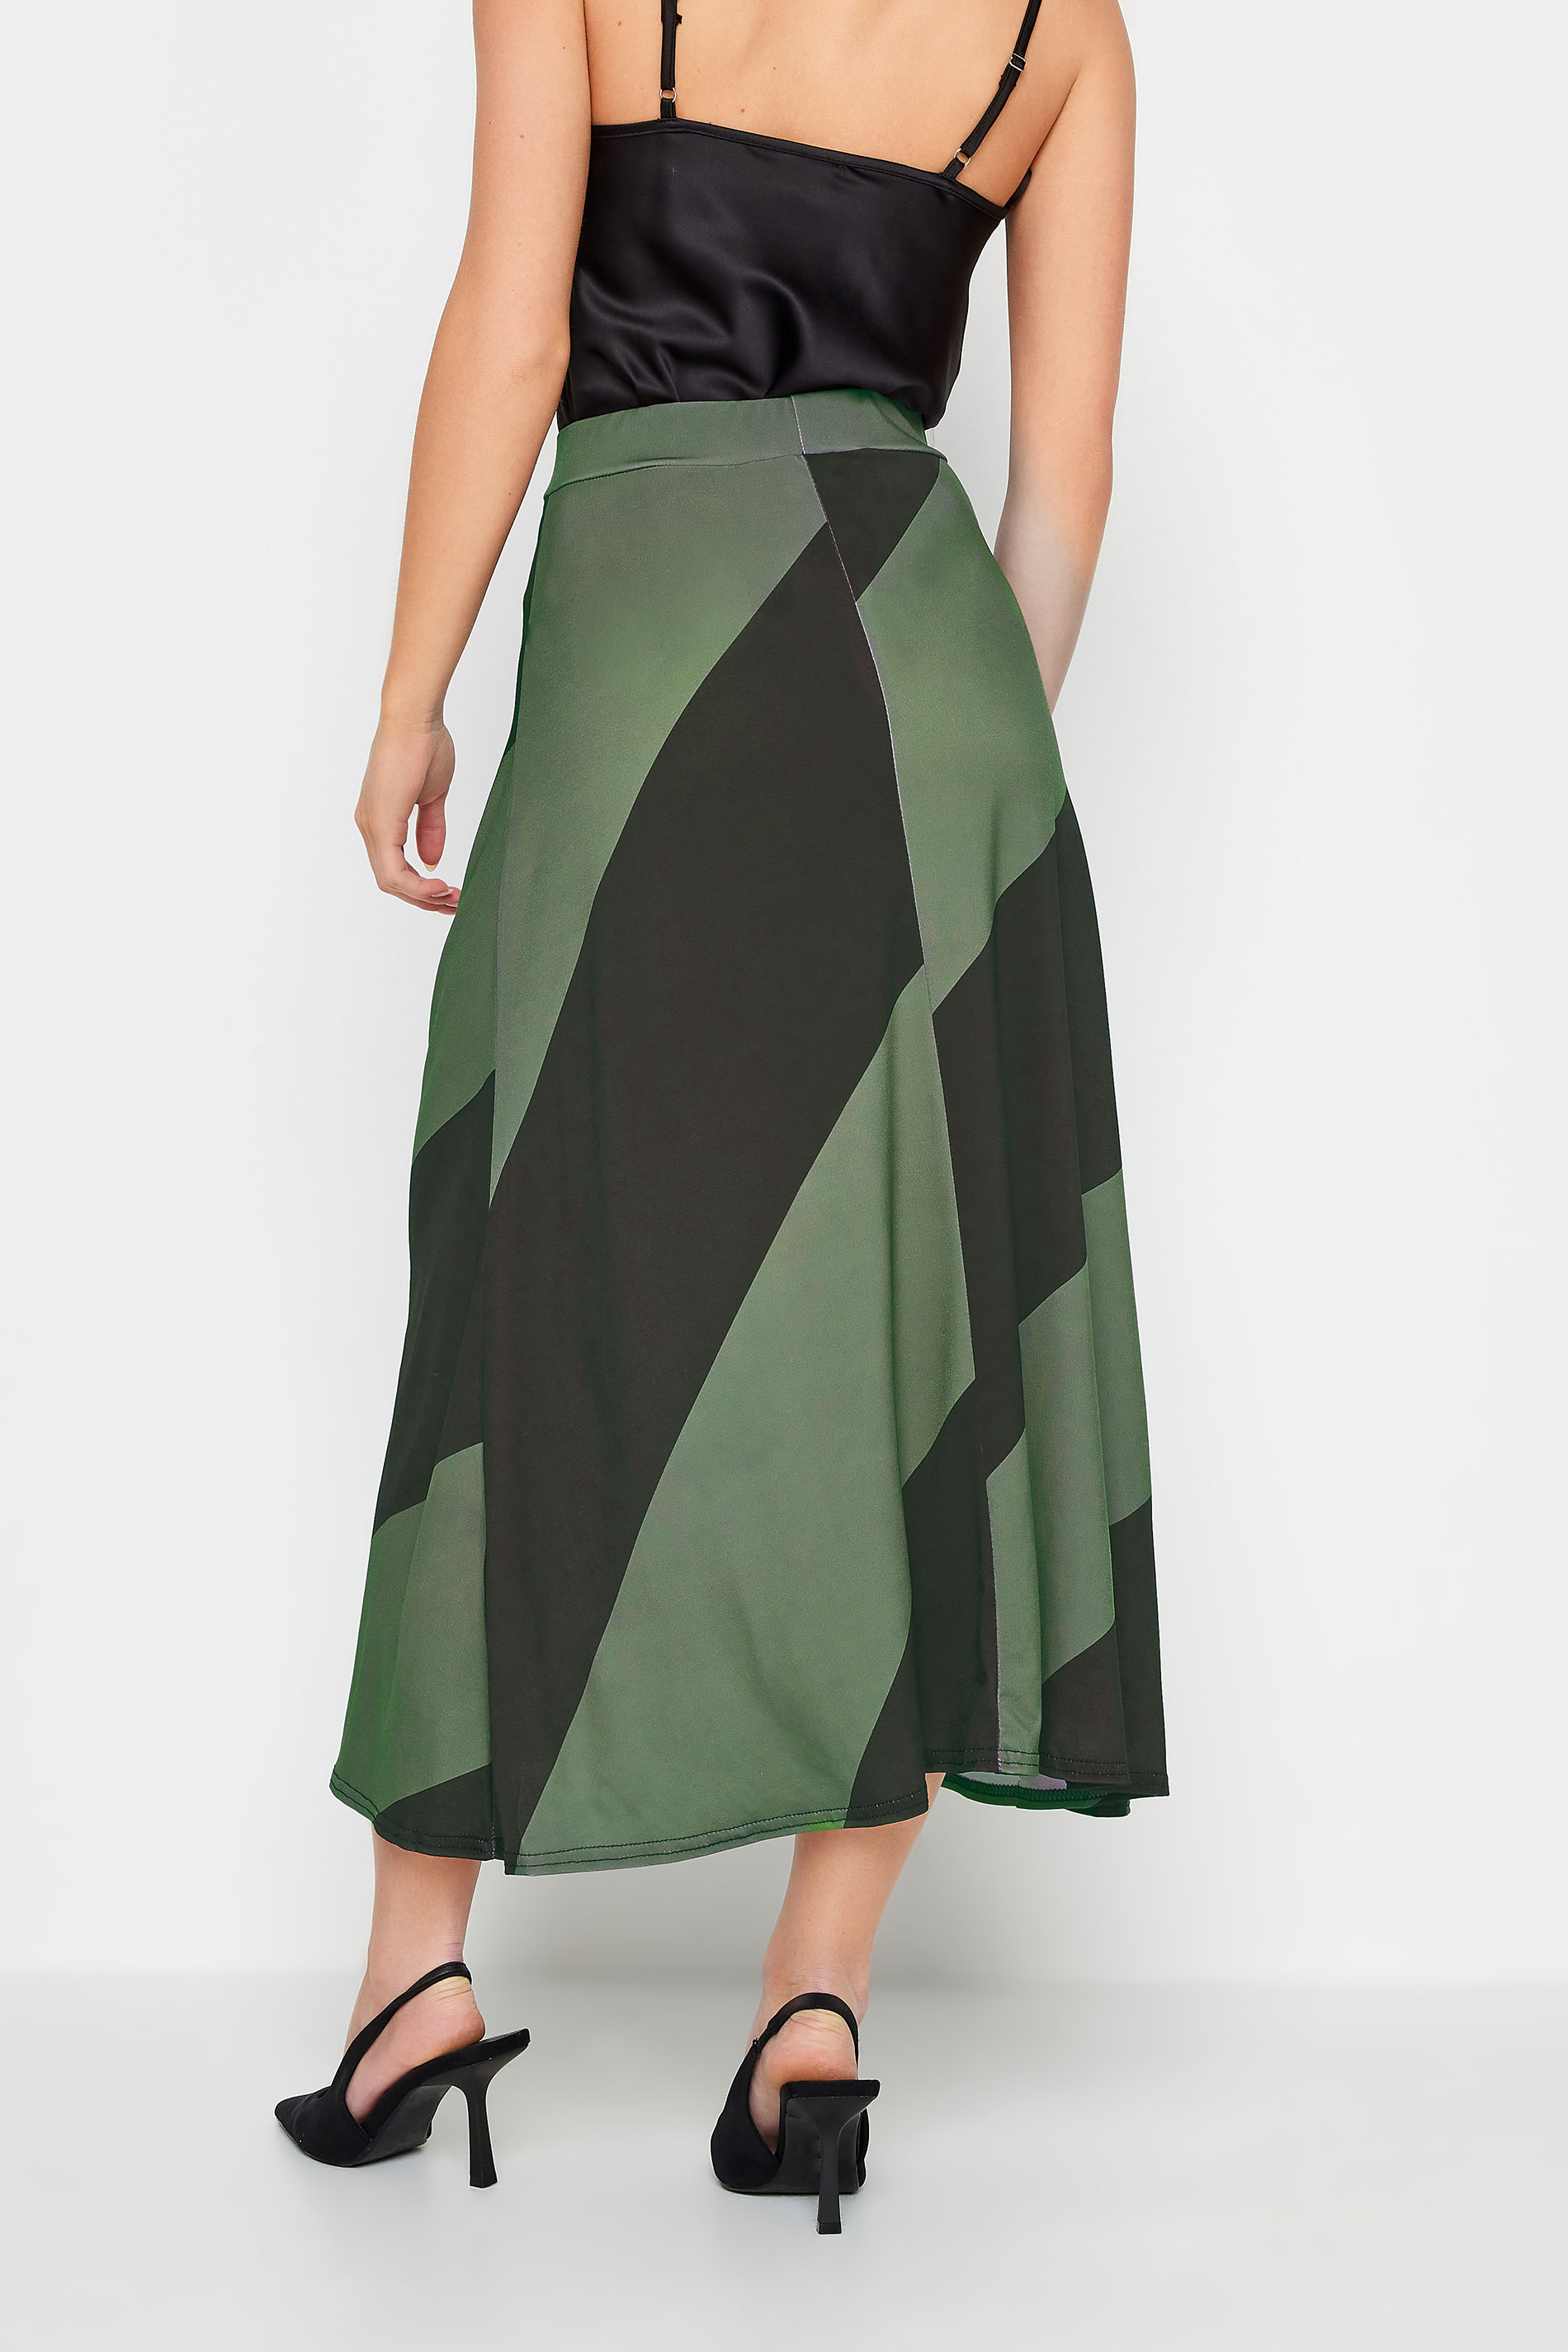 PixieGirl Green Diagonal Stripe Maxi Skirt | PixieGirl 3